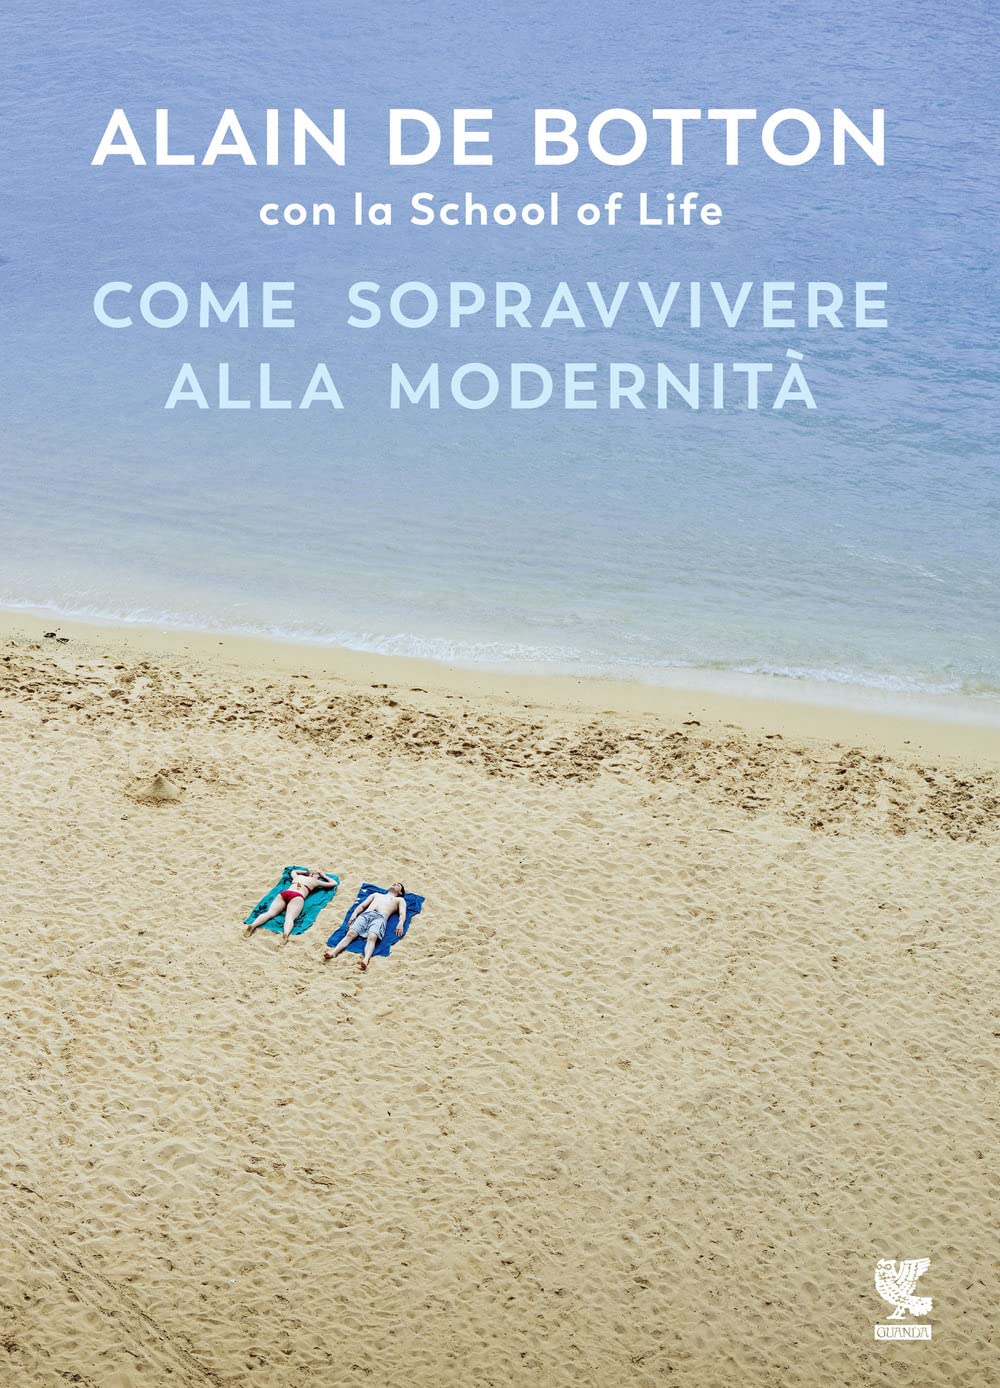 Alain de Botton: Come sopravvivere alla modernità (Italiano language, Guanda)